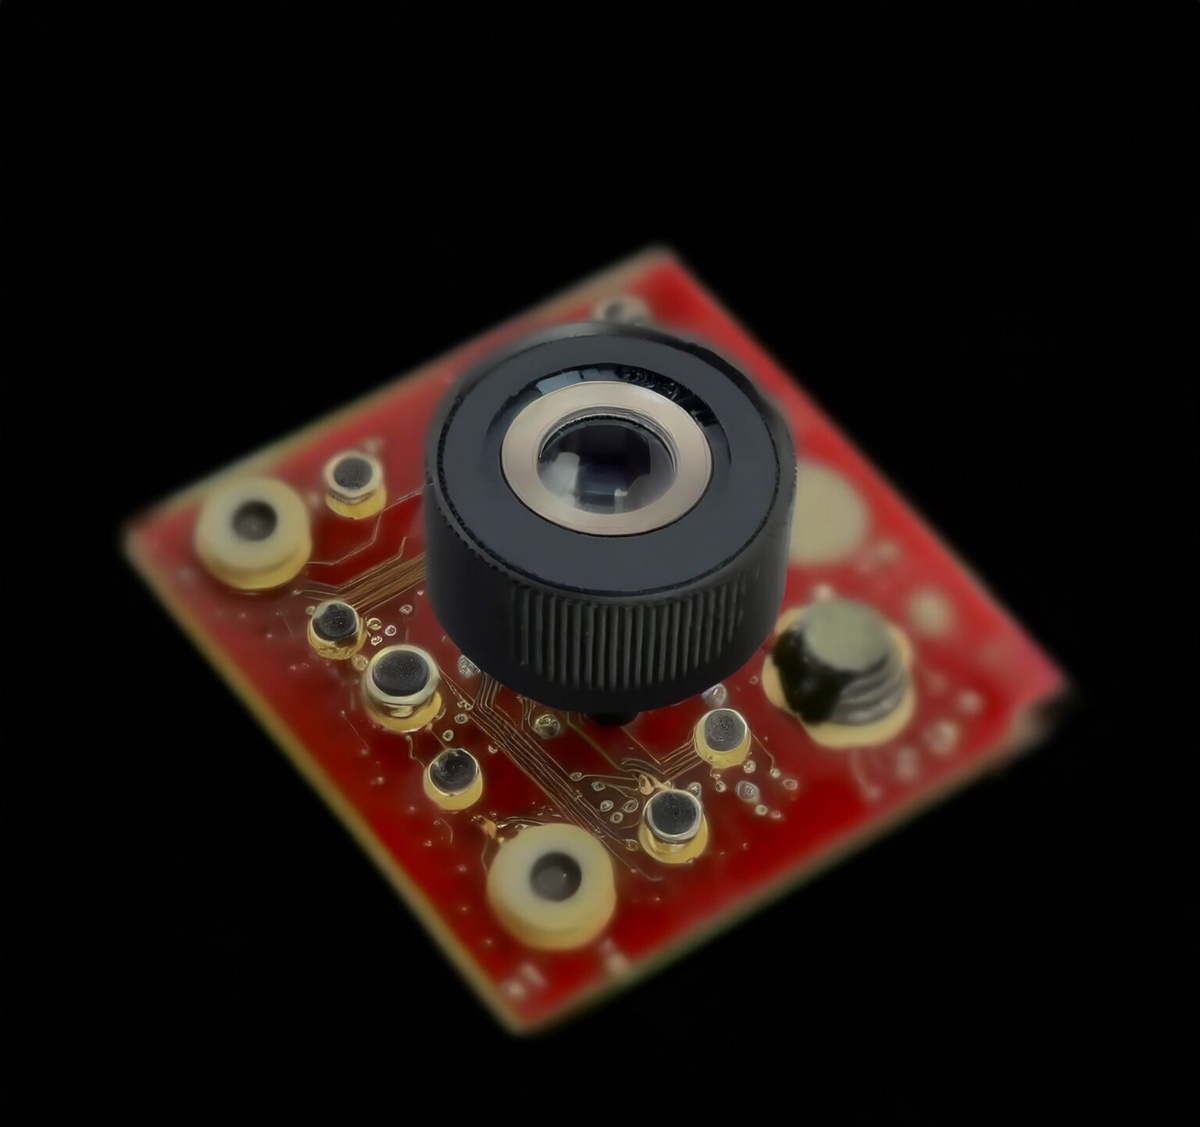 The Lens of Innovation: Embedded USB Cameras in the Spotlight